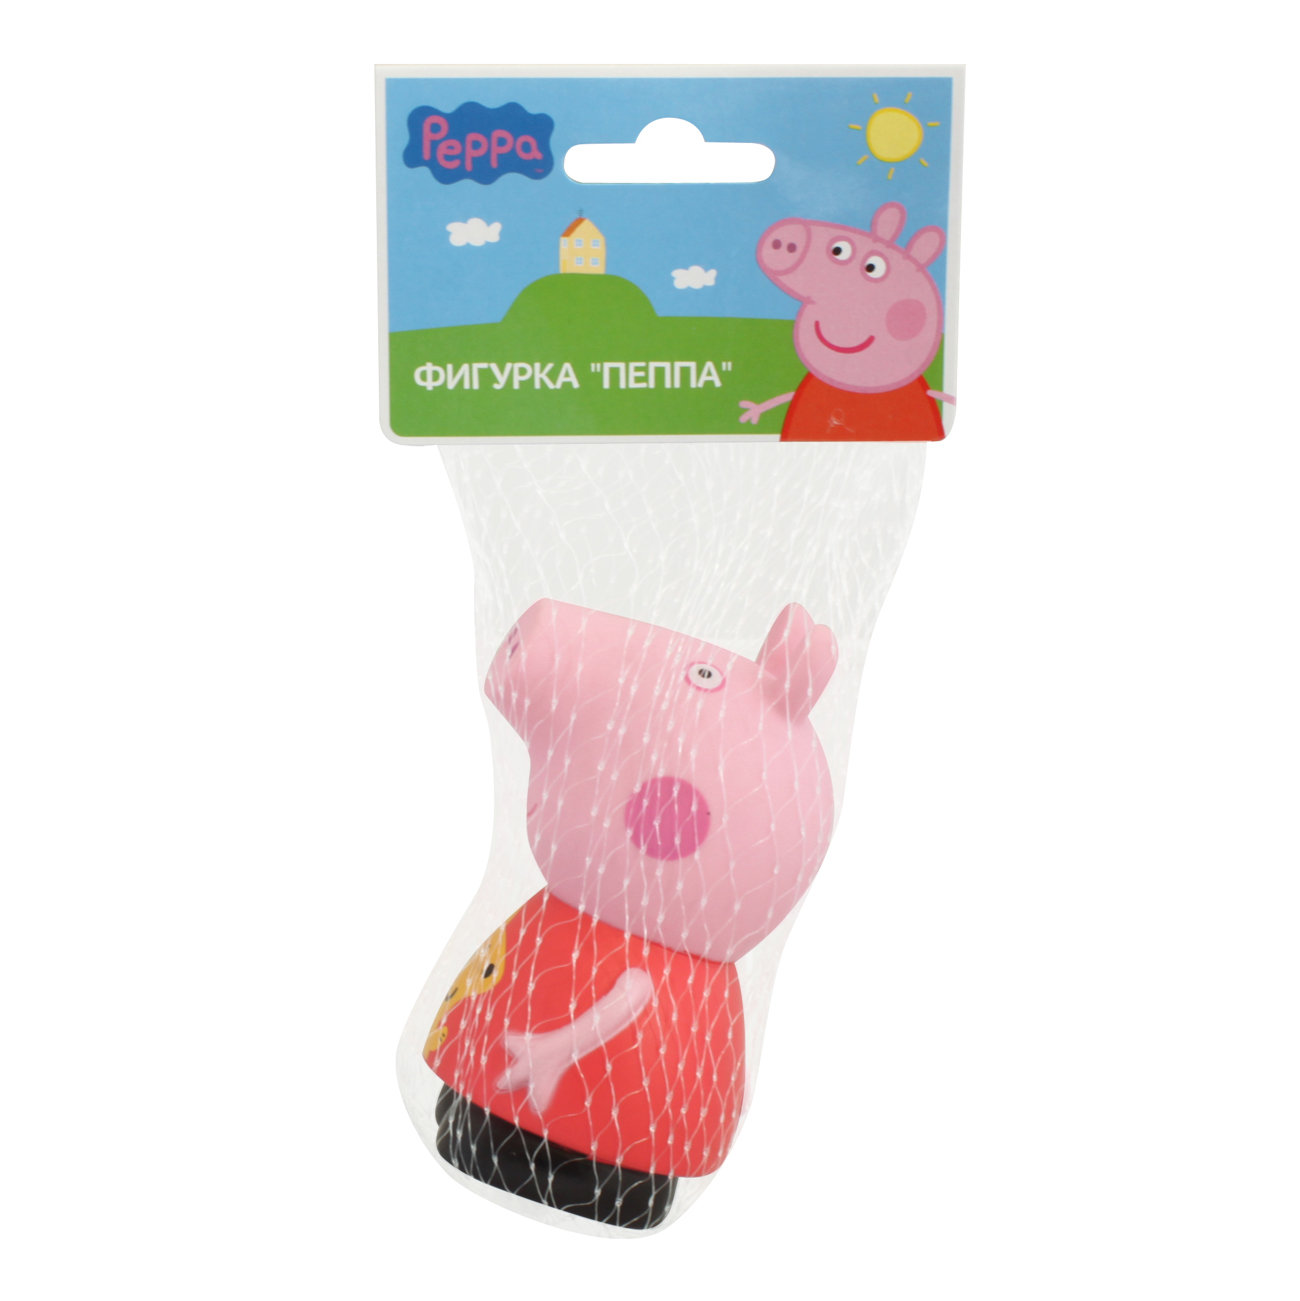 Игровой набор  «Пеппа» пластизоль Peppa Pig  